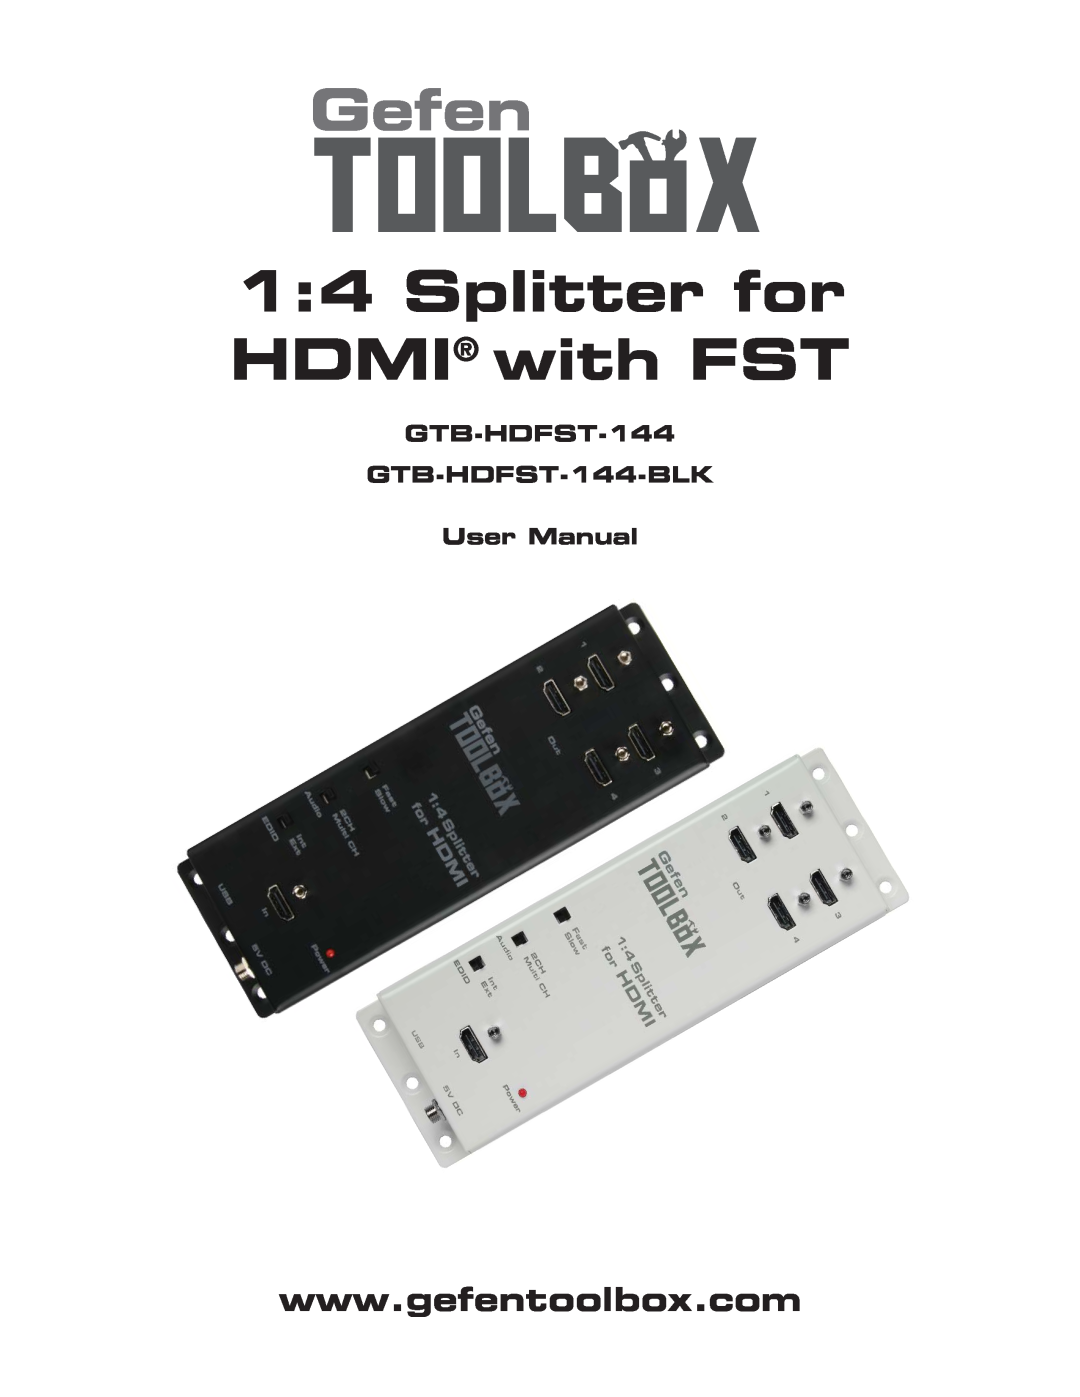 Gefen GTB-HDFST-144-BLK user manual Gefen, Splitter for HDMI with FST 